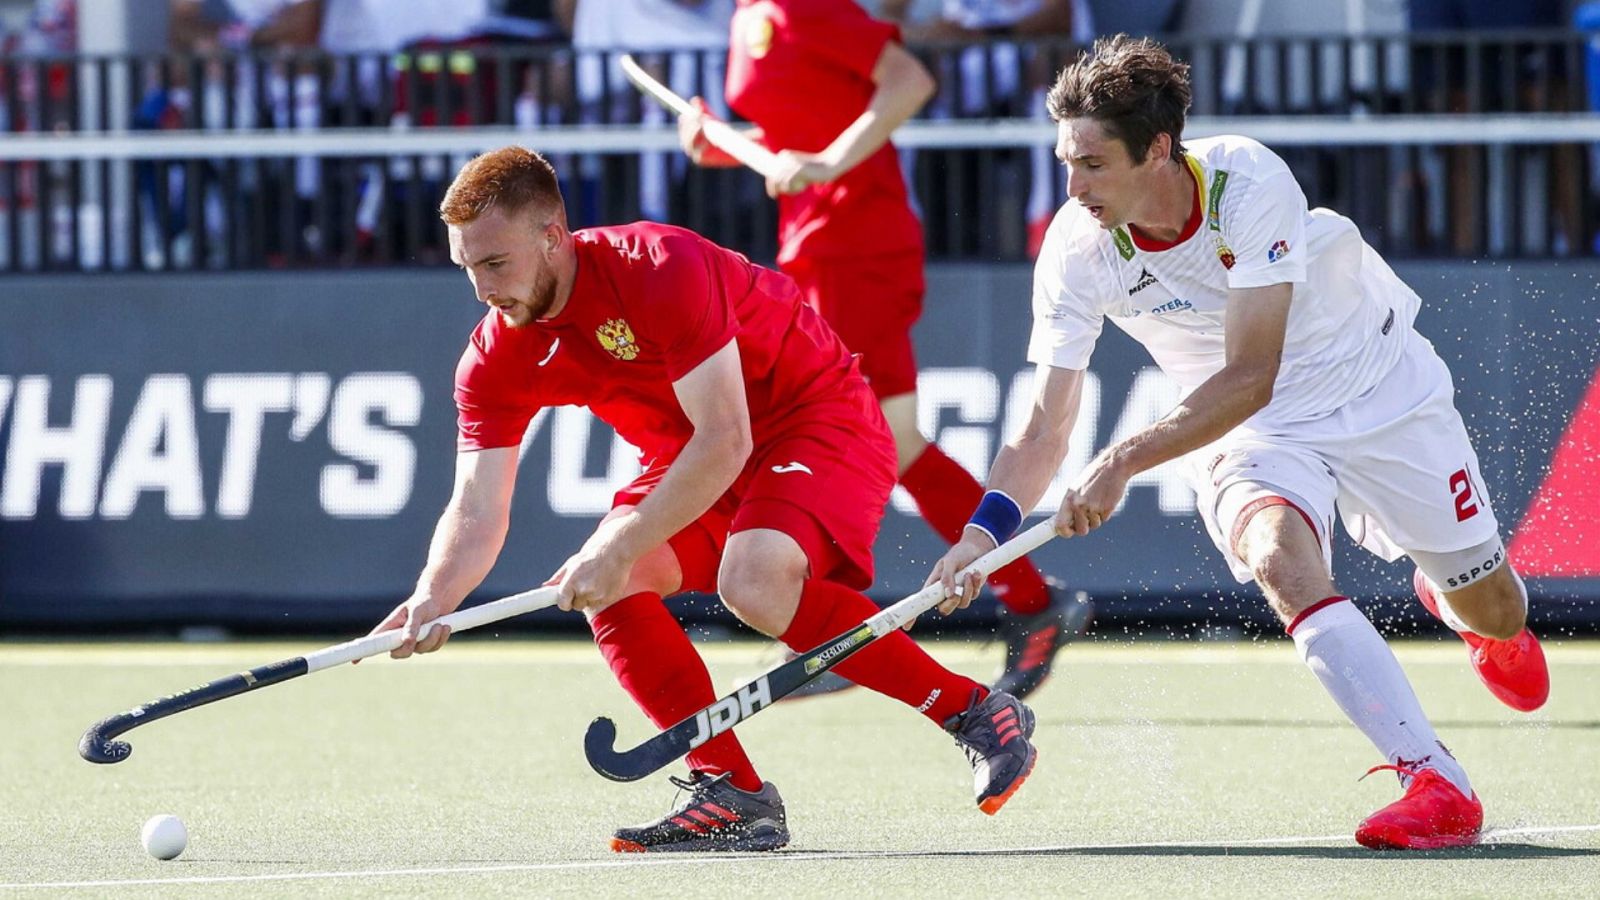 Hockey hierba - Campeonato de Europa masculino: España - Inglaterra